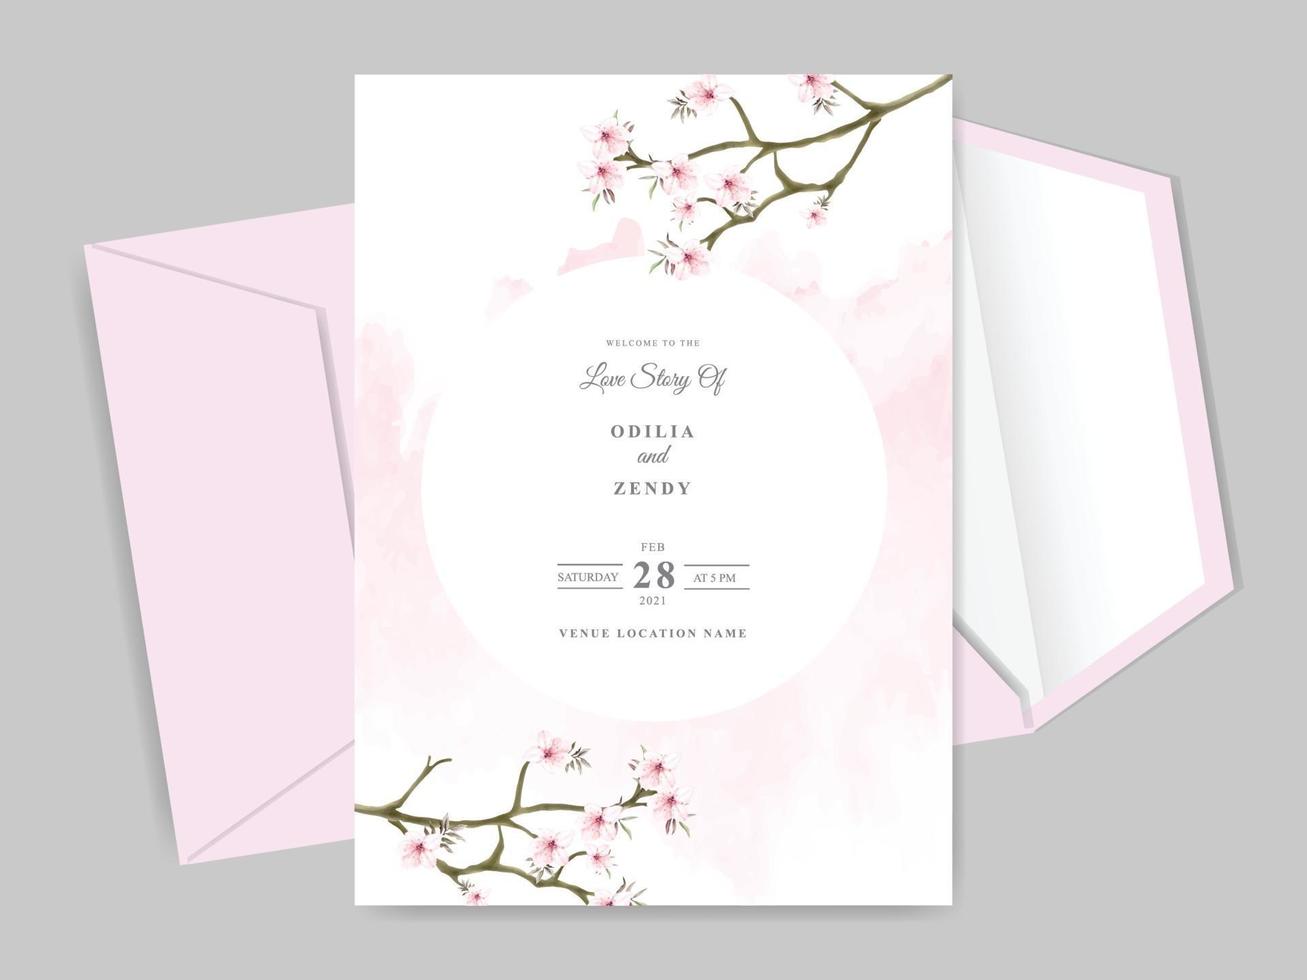 schöne und elegante florale Hand gezeichnete Hochzeitseinladungskartenschablone vektor